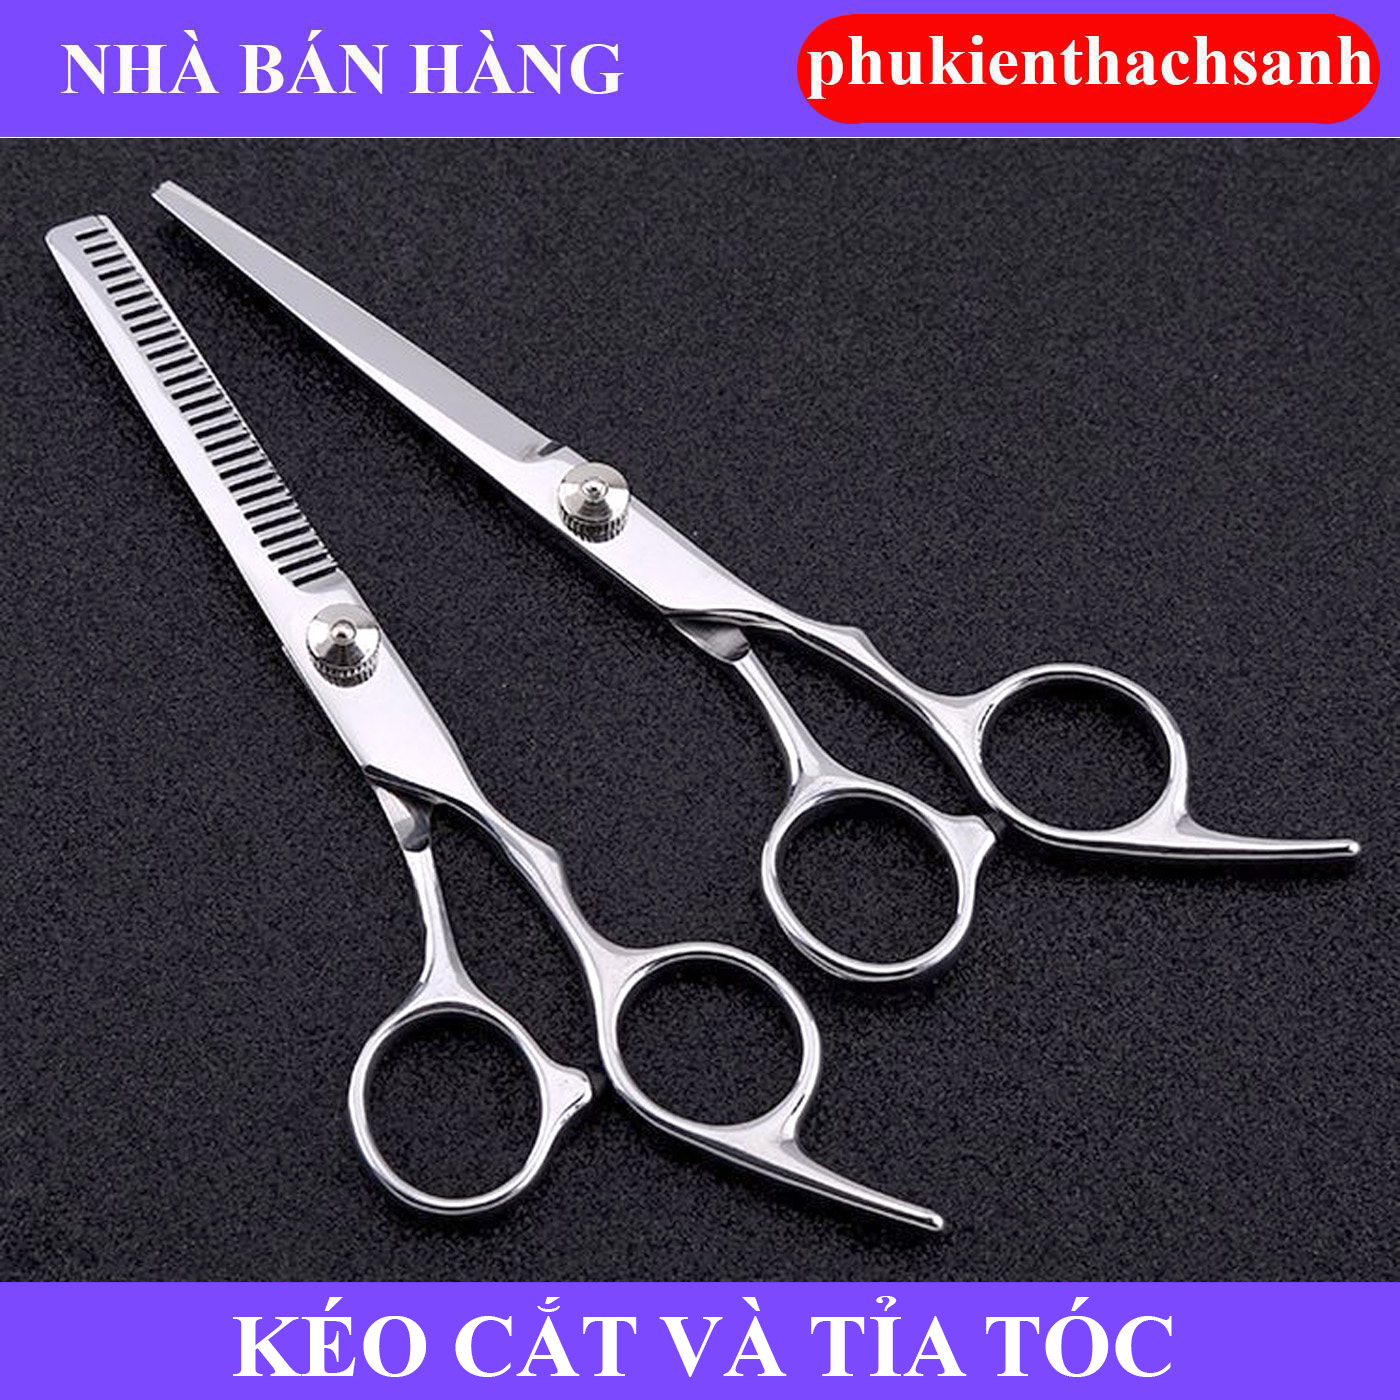 P4  Sơ đồ kỹ thuật cắt tóc trong Giáo trình Vidal Sassoon